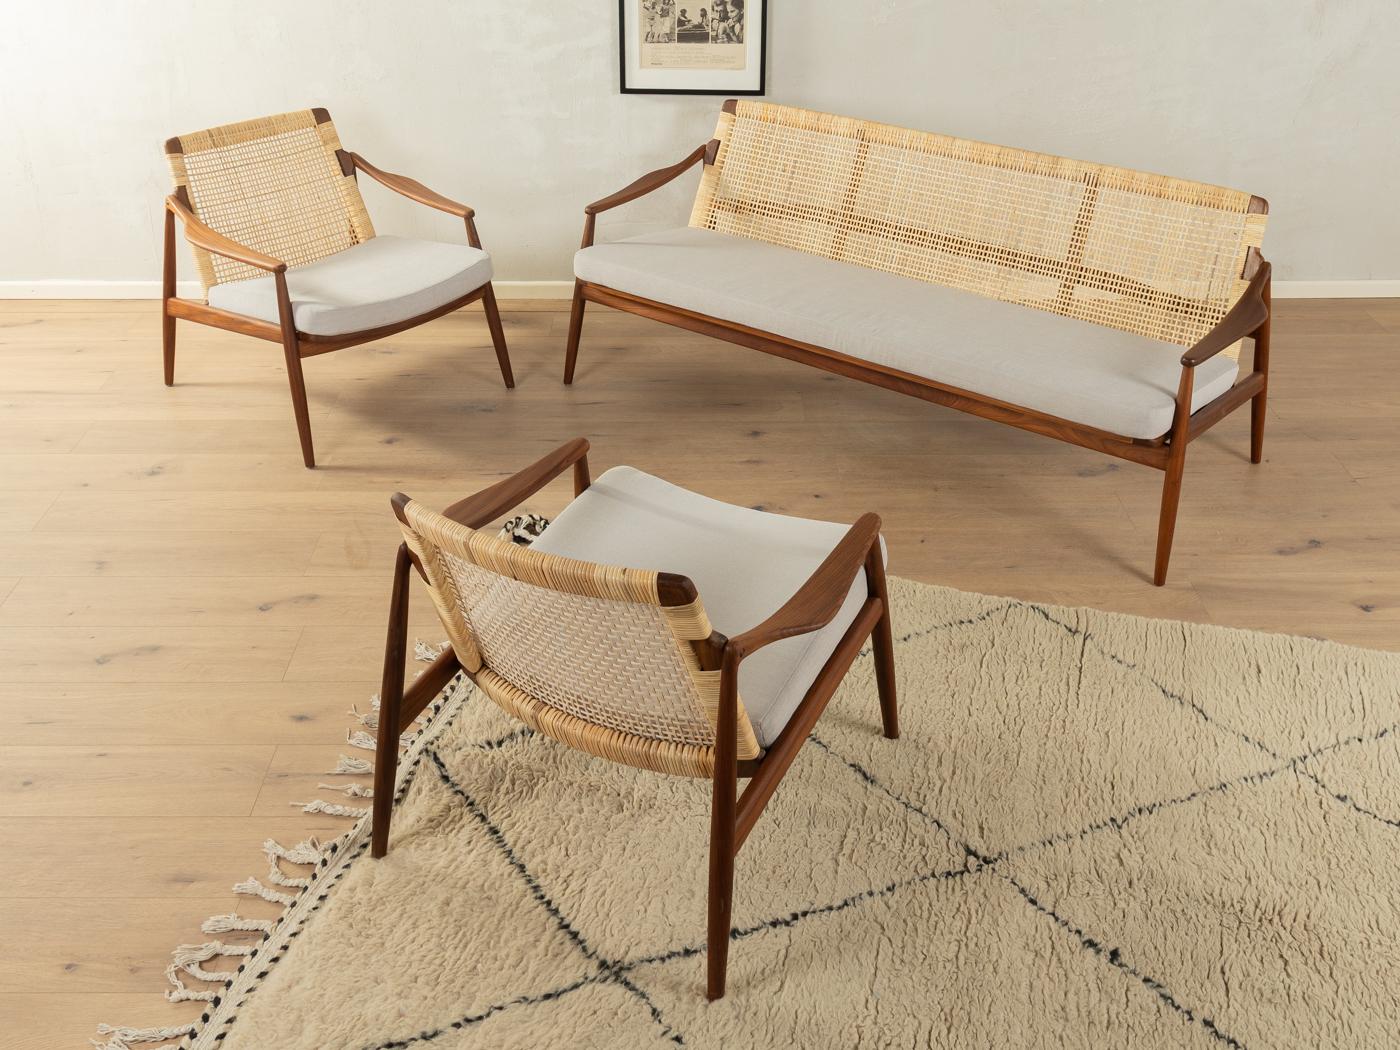 Exklusive Möbelgruppe mit einem Sofa und zwei Sesseln des Typs 400 aus den 1950er Jahren von Hartmut Lohmeyer für Wilkhahn. Hochwertiges Teakholzgestell mit neuem, modernem Flechtwerk. Die Möbelgarnitur wurde neu gepolstert und mit einem